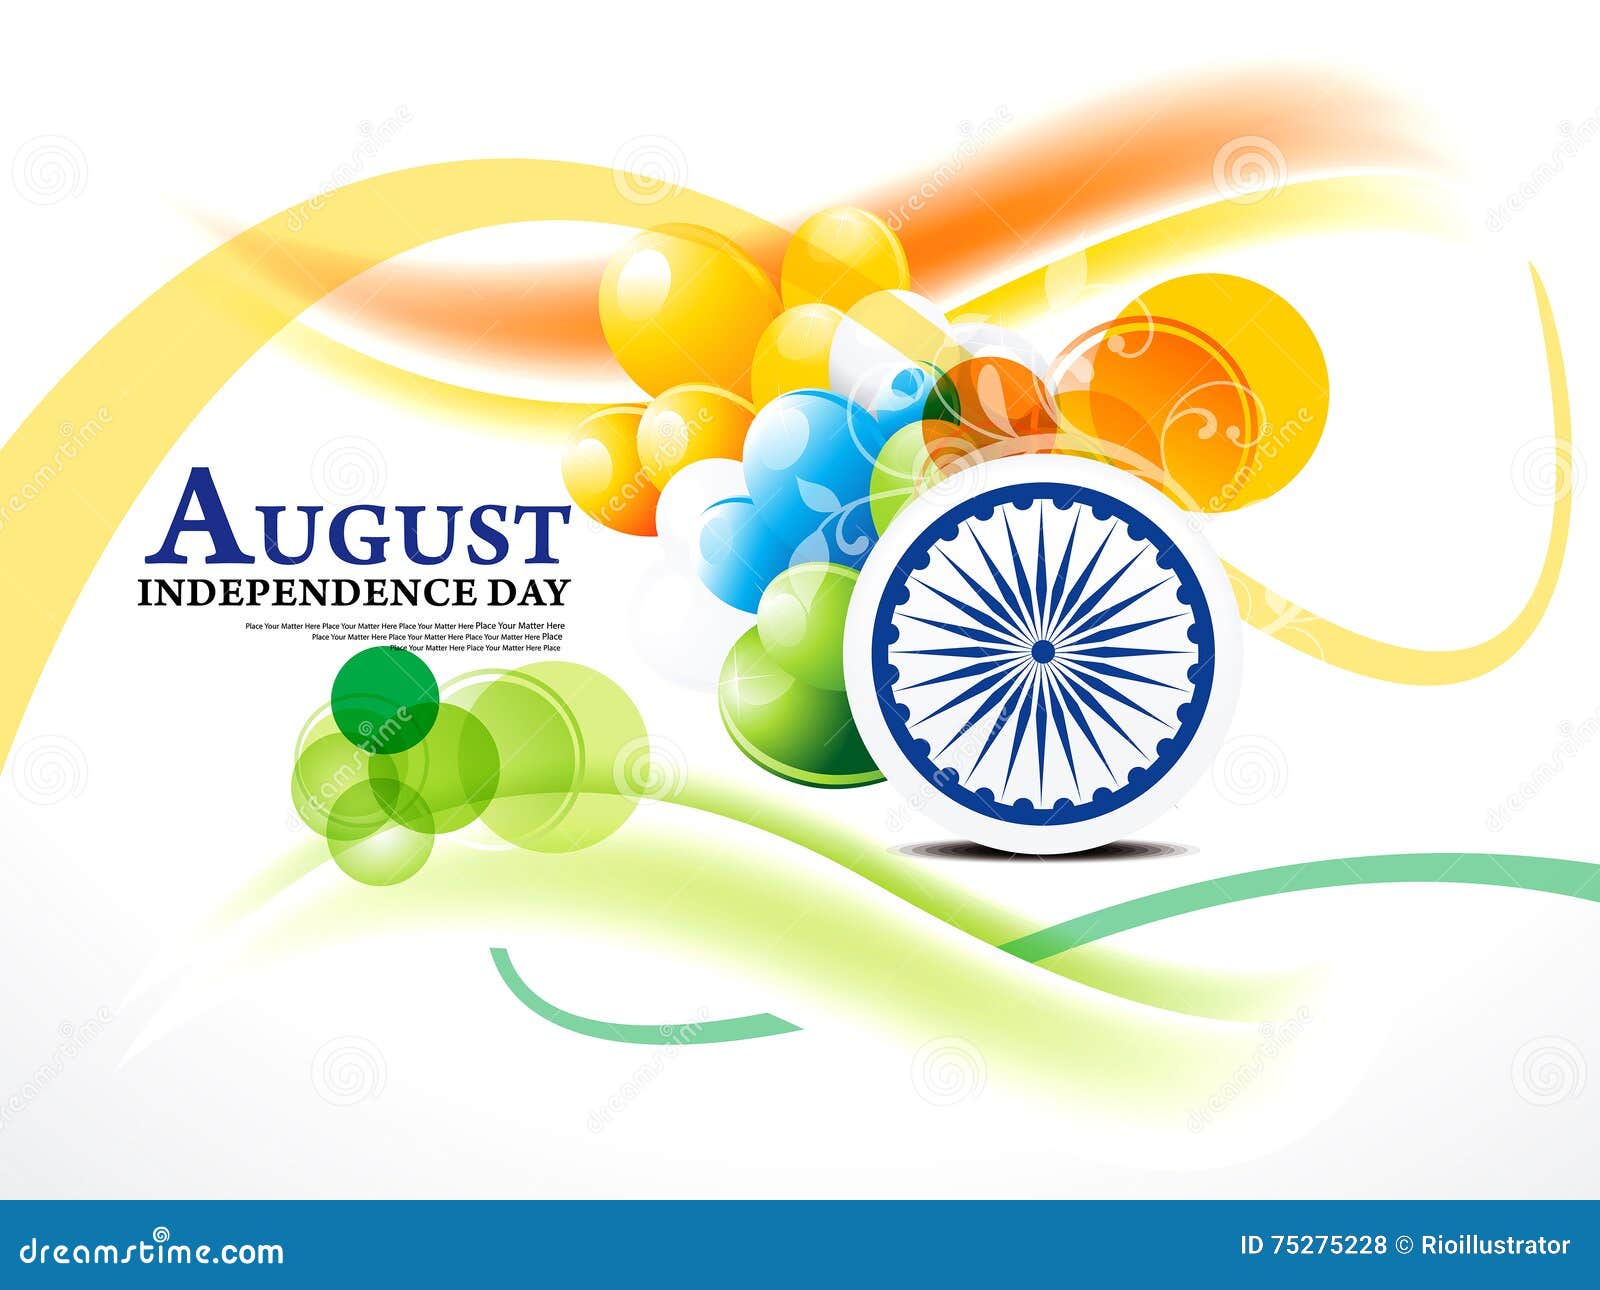 Ngày độc lập Ấn Độ: Hãy cùng chào đón ngày lịch sử của Ấn Độ khi Quốc gia đã đón nhận sự độc lập vĩ đại vào ngày này. Hình ảnh sẽ mang đến những cảm xúc tuyệt vời về sự kiện này và đưa bạn trở lại trong quá khứ để tham gia và cảm nhận tinh thần độc lập của người Ấn.